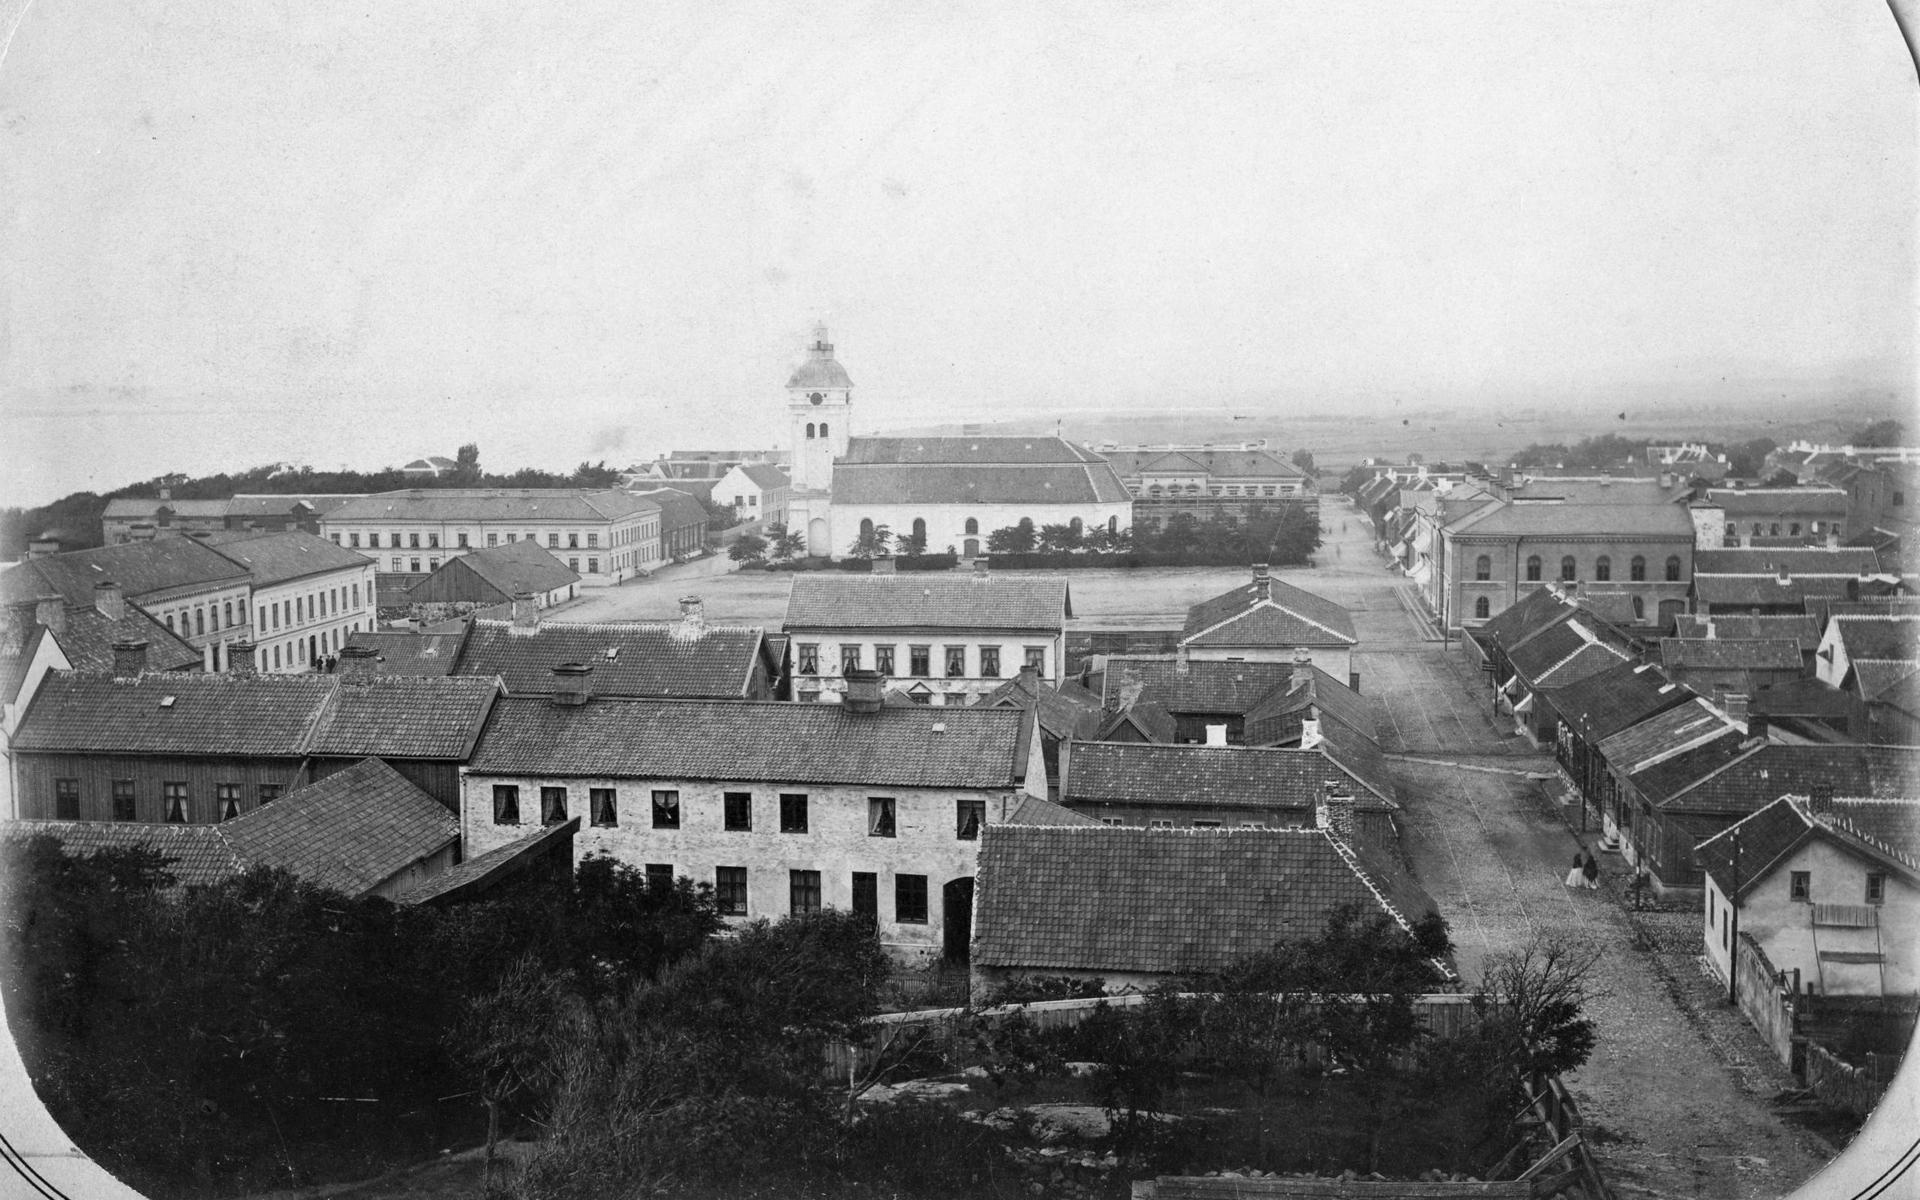 Utsikt över Varberg från Pilhagen någon gång under 1870-talet. Kyrkan och huset där Rydholms dammode ligger syns i bilden, liksom rådhuset som stod färdigt 1865.